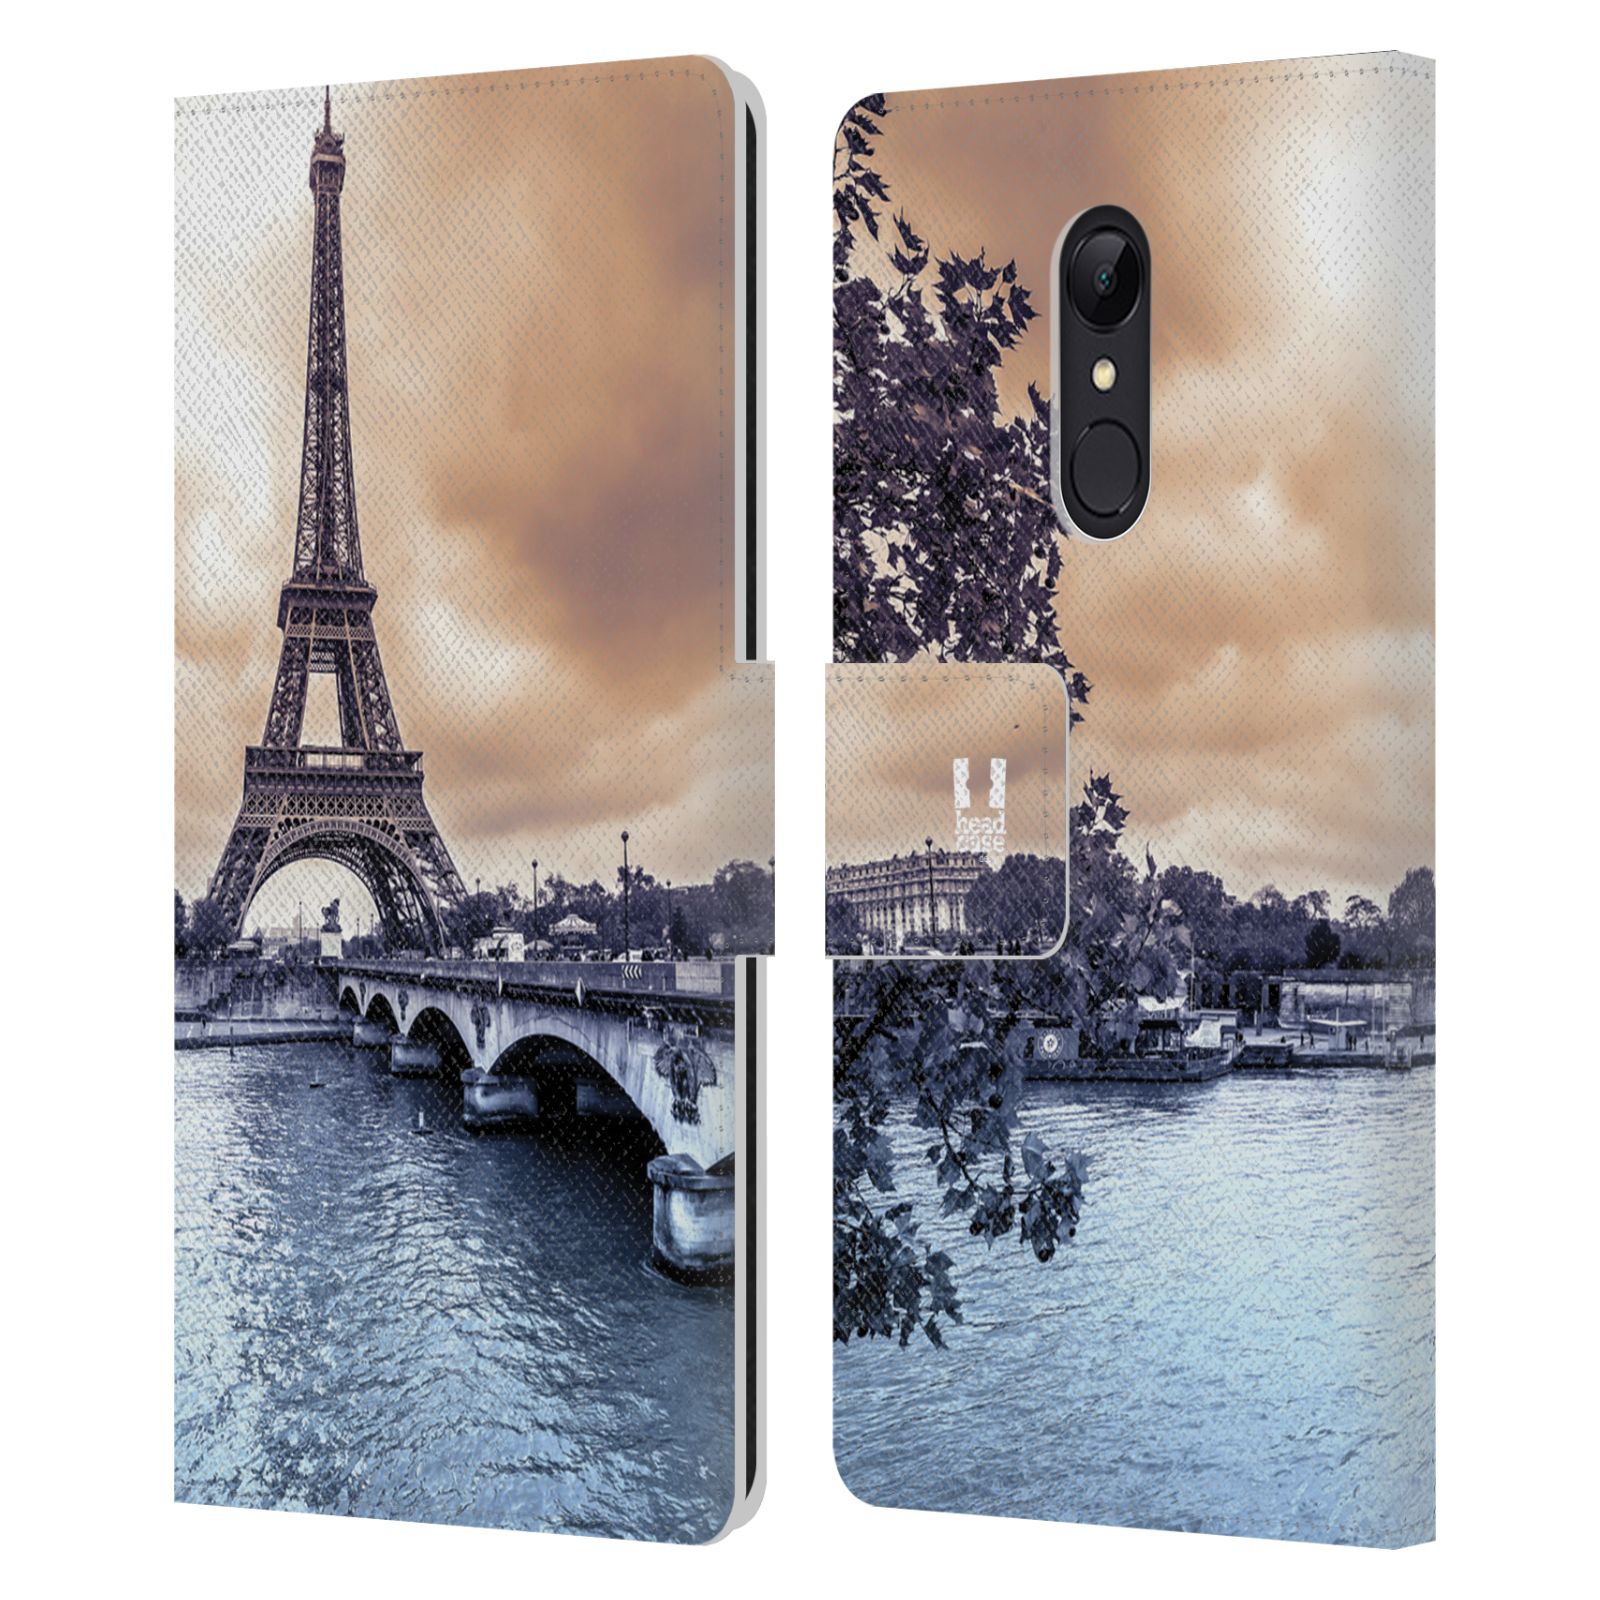 Pouzdro na mobil Xiaomi Redmi 5 - Head Case - Paříž Eiffelova věž